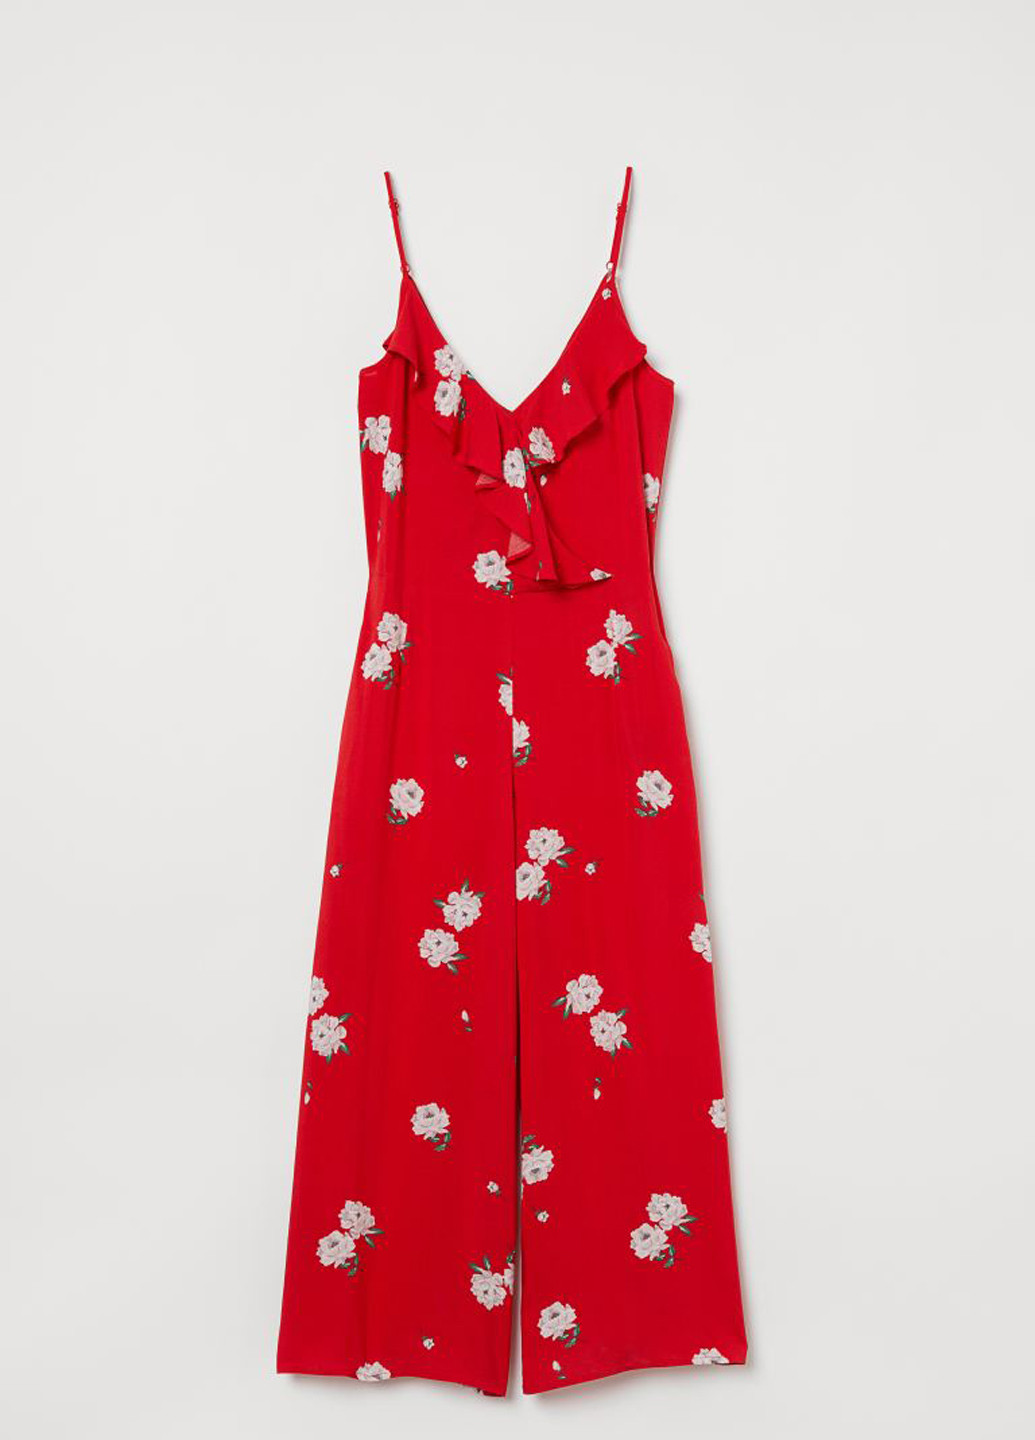 Комбинезон H&M комбинезон-брюки цветочный красный кэжуал вискоза